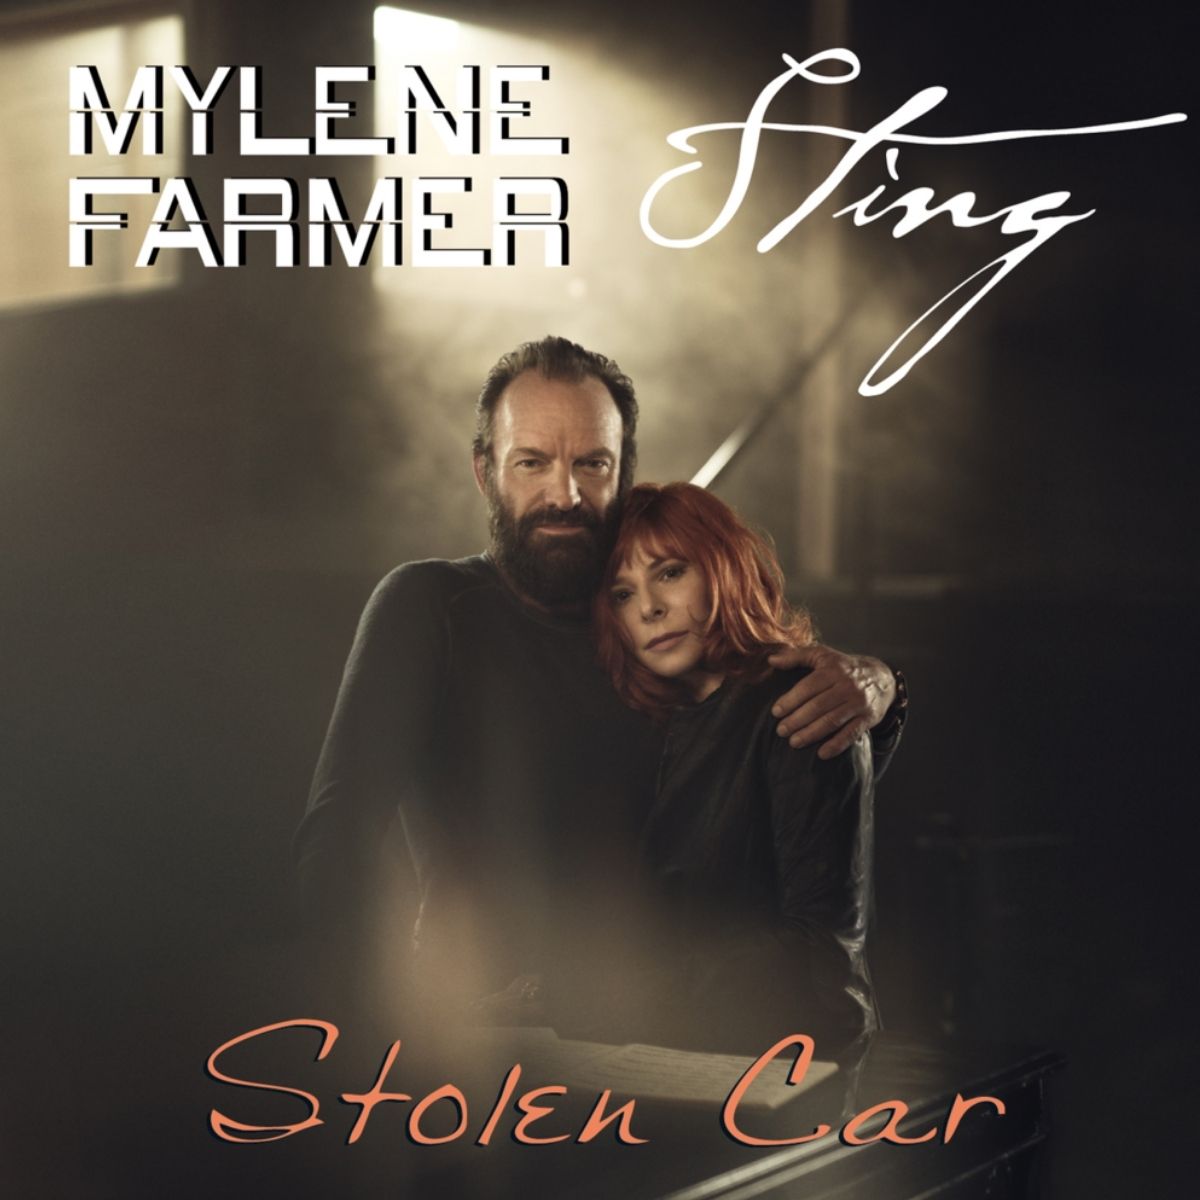 Обложка песни Стинга (Sting) и Милен Фармер (Mylene Farmer) «Stolen Car»